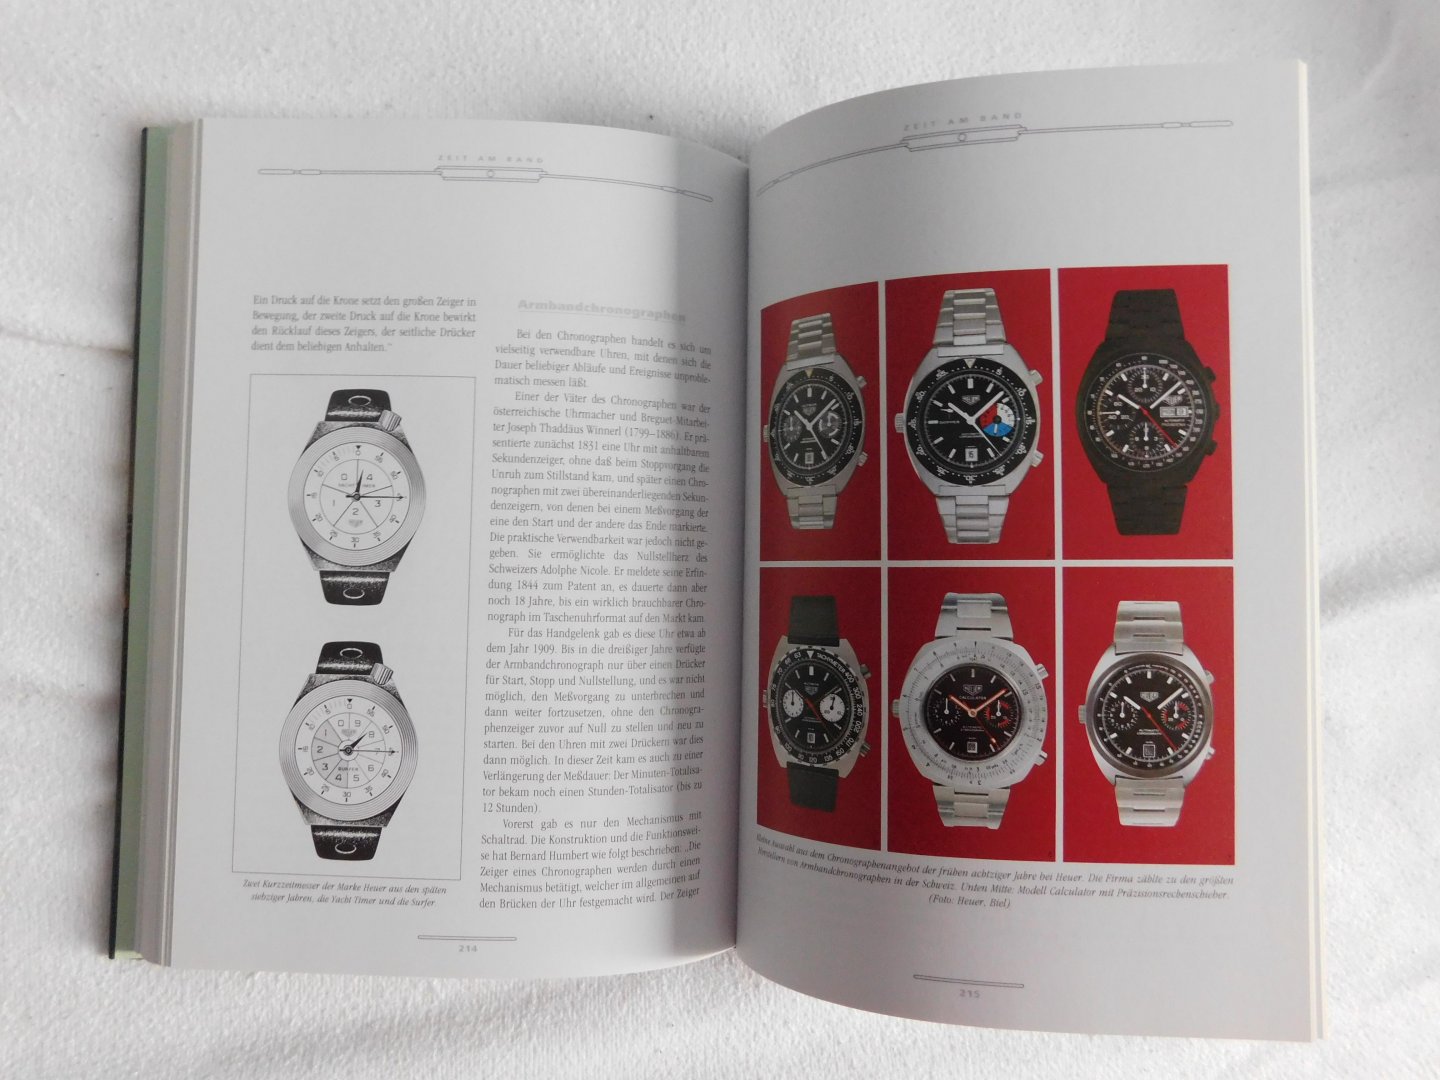 Anton Kreuzer - Armbanduhren geschichte,techniek und design